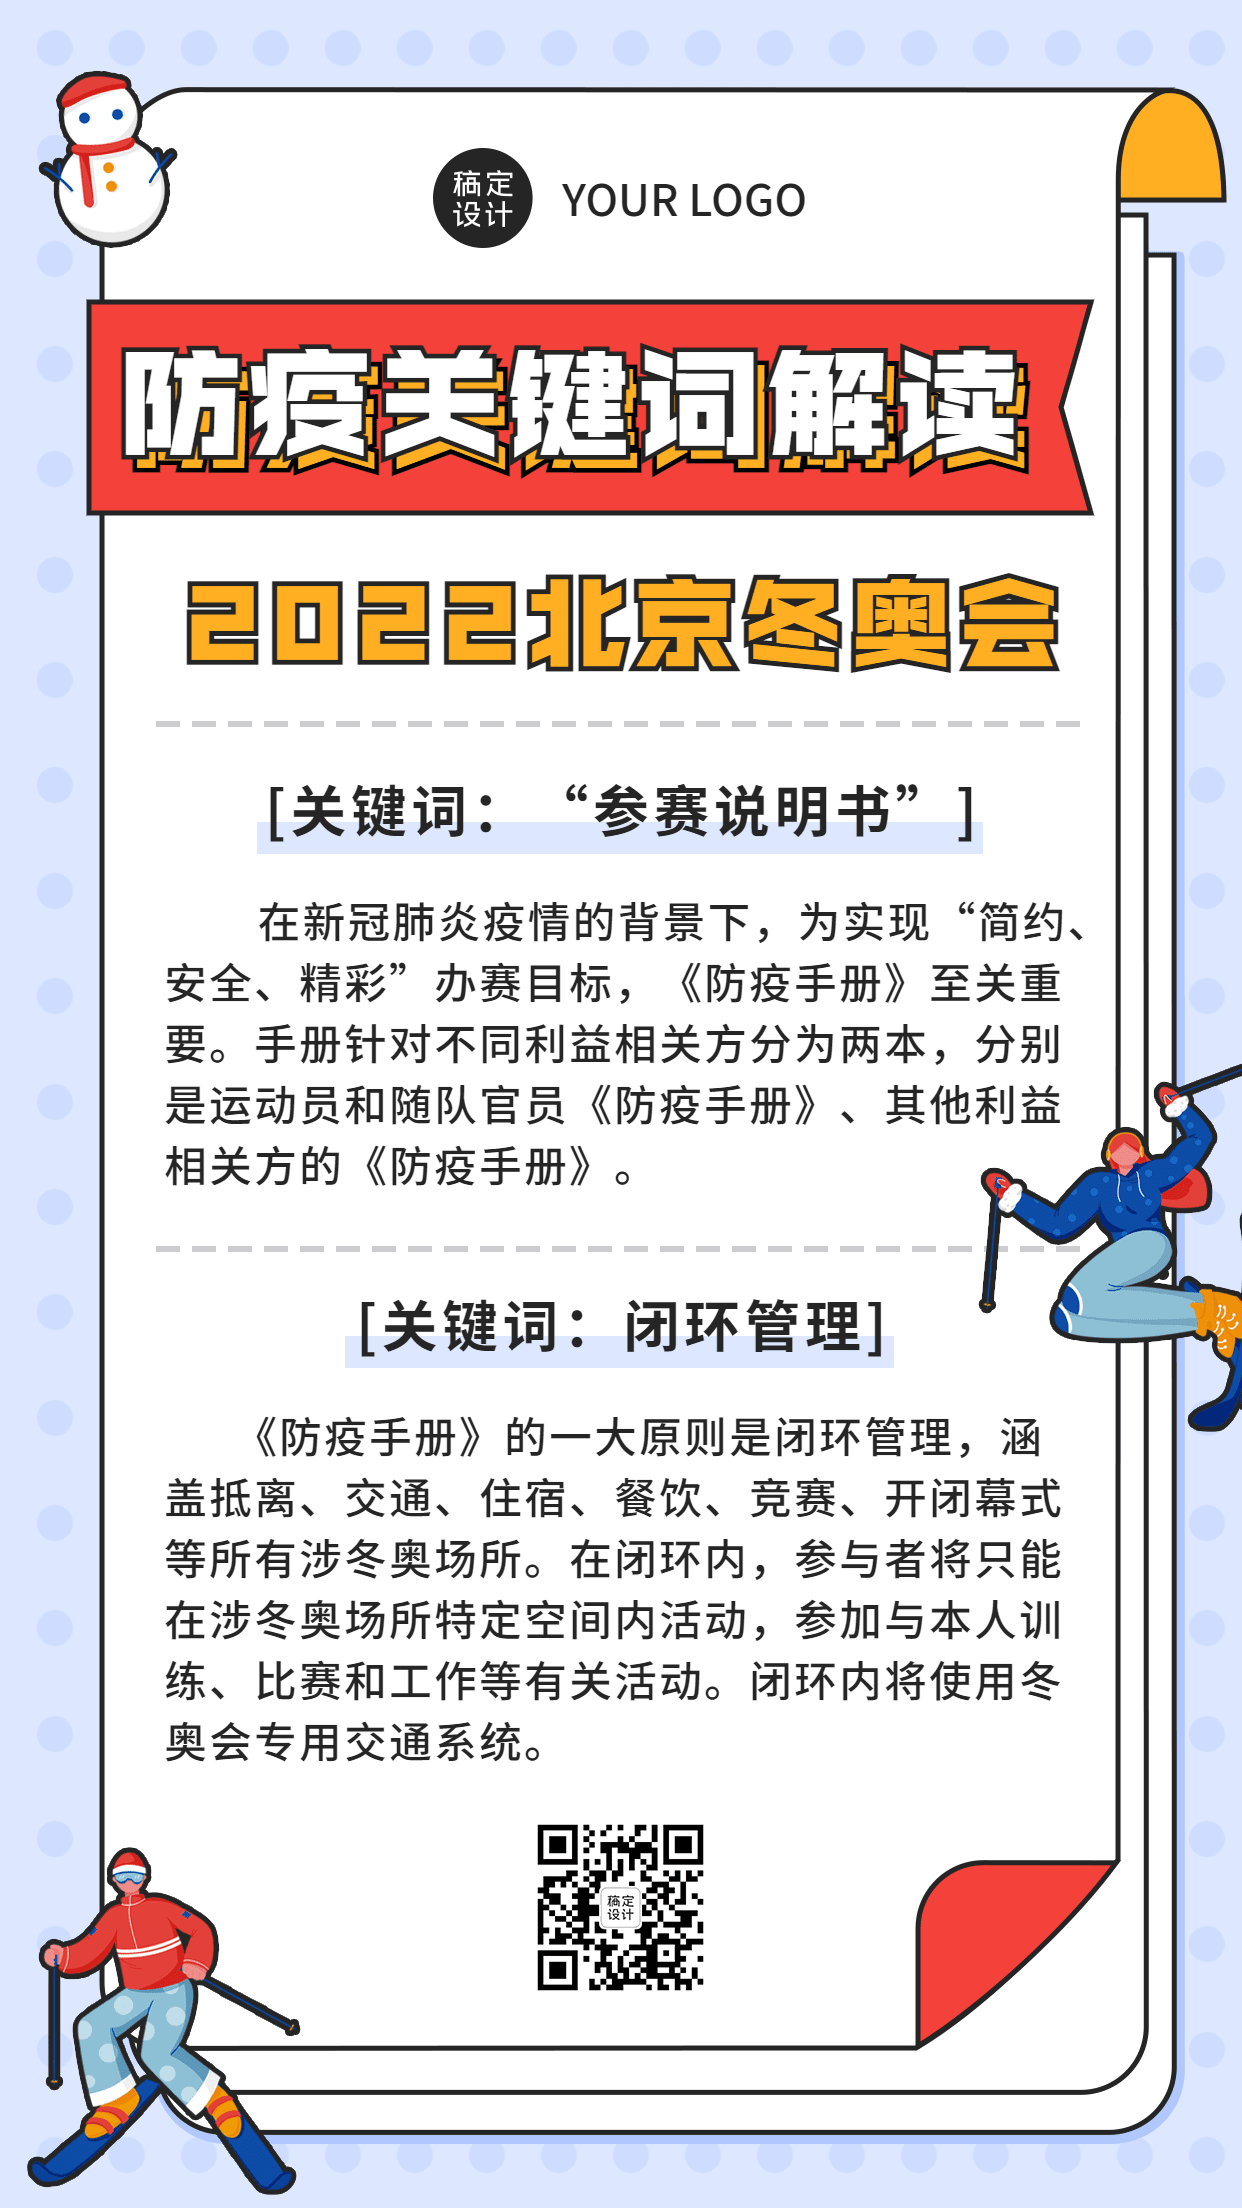 北京冬奥会疫情防控政策措施通知公告提示须知融媒体手机海报